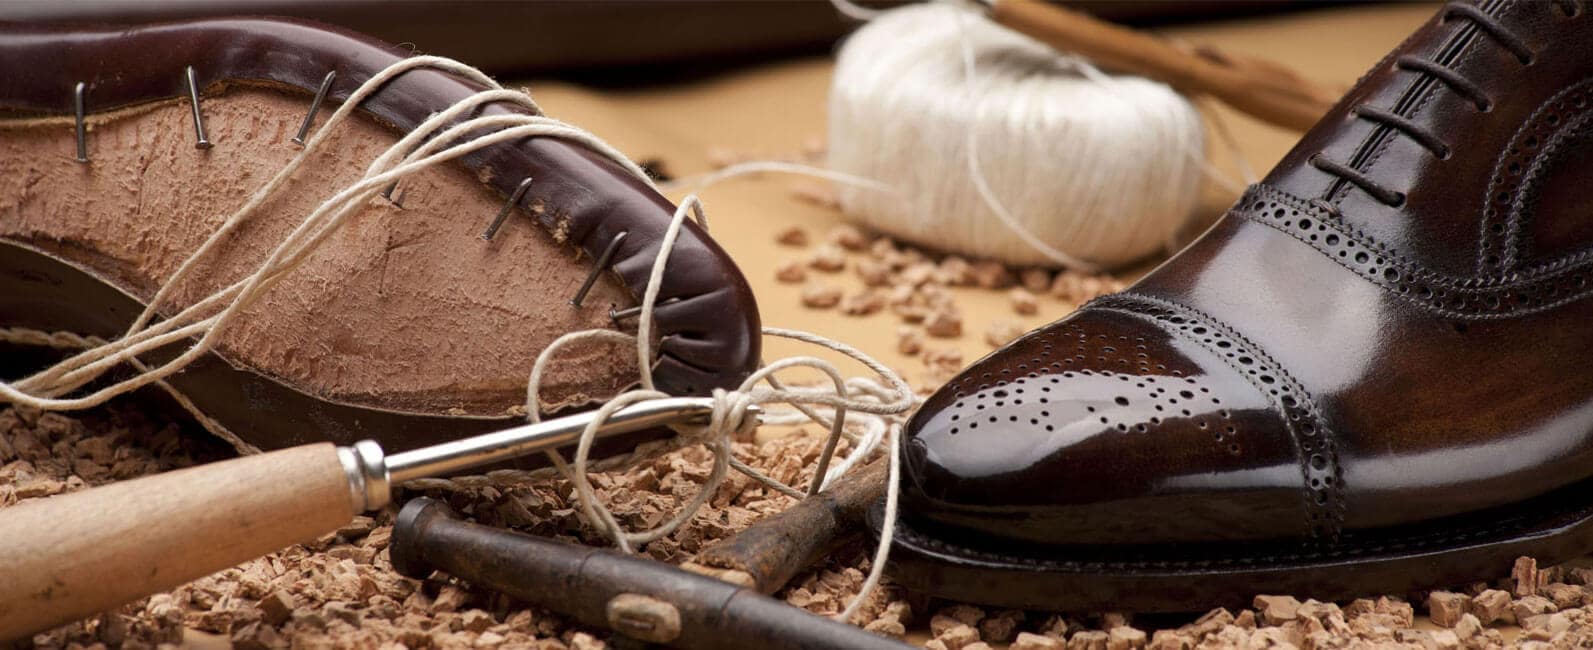 Мясоперерабатывающий комплекс в ЗКО начнет производить кожу для обуви